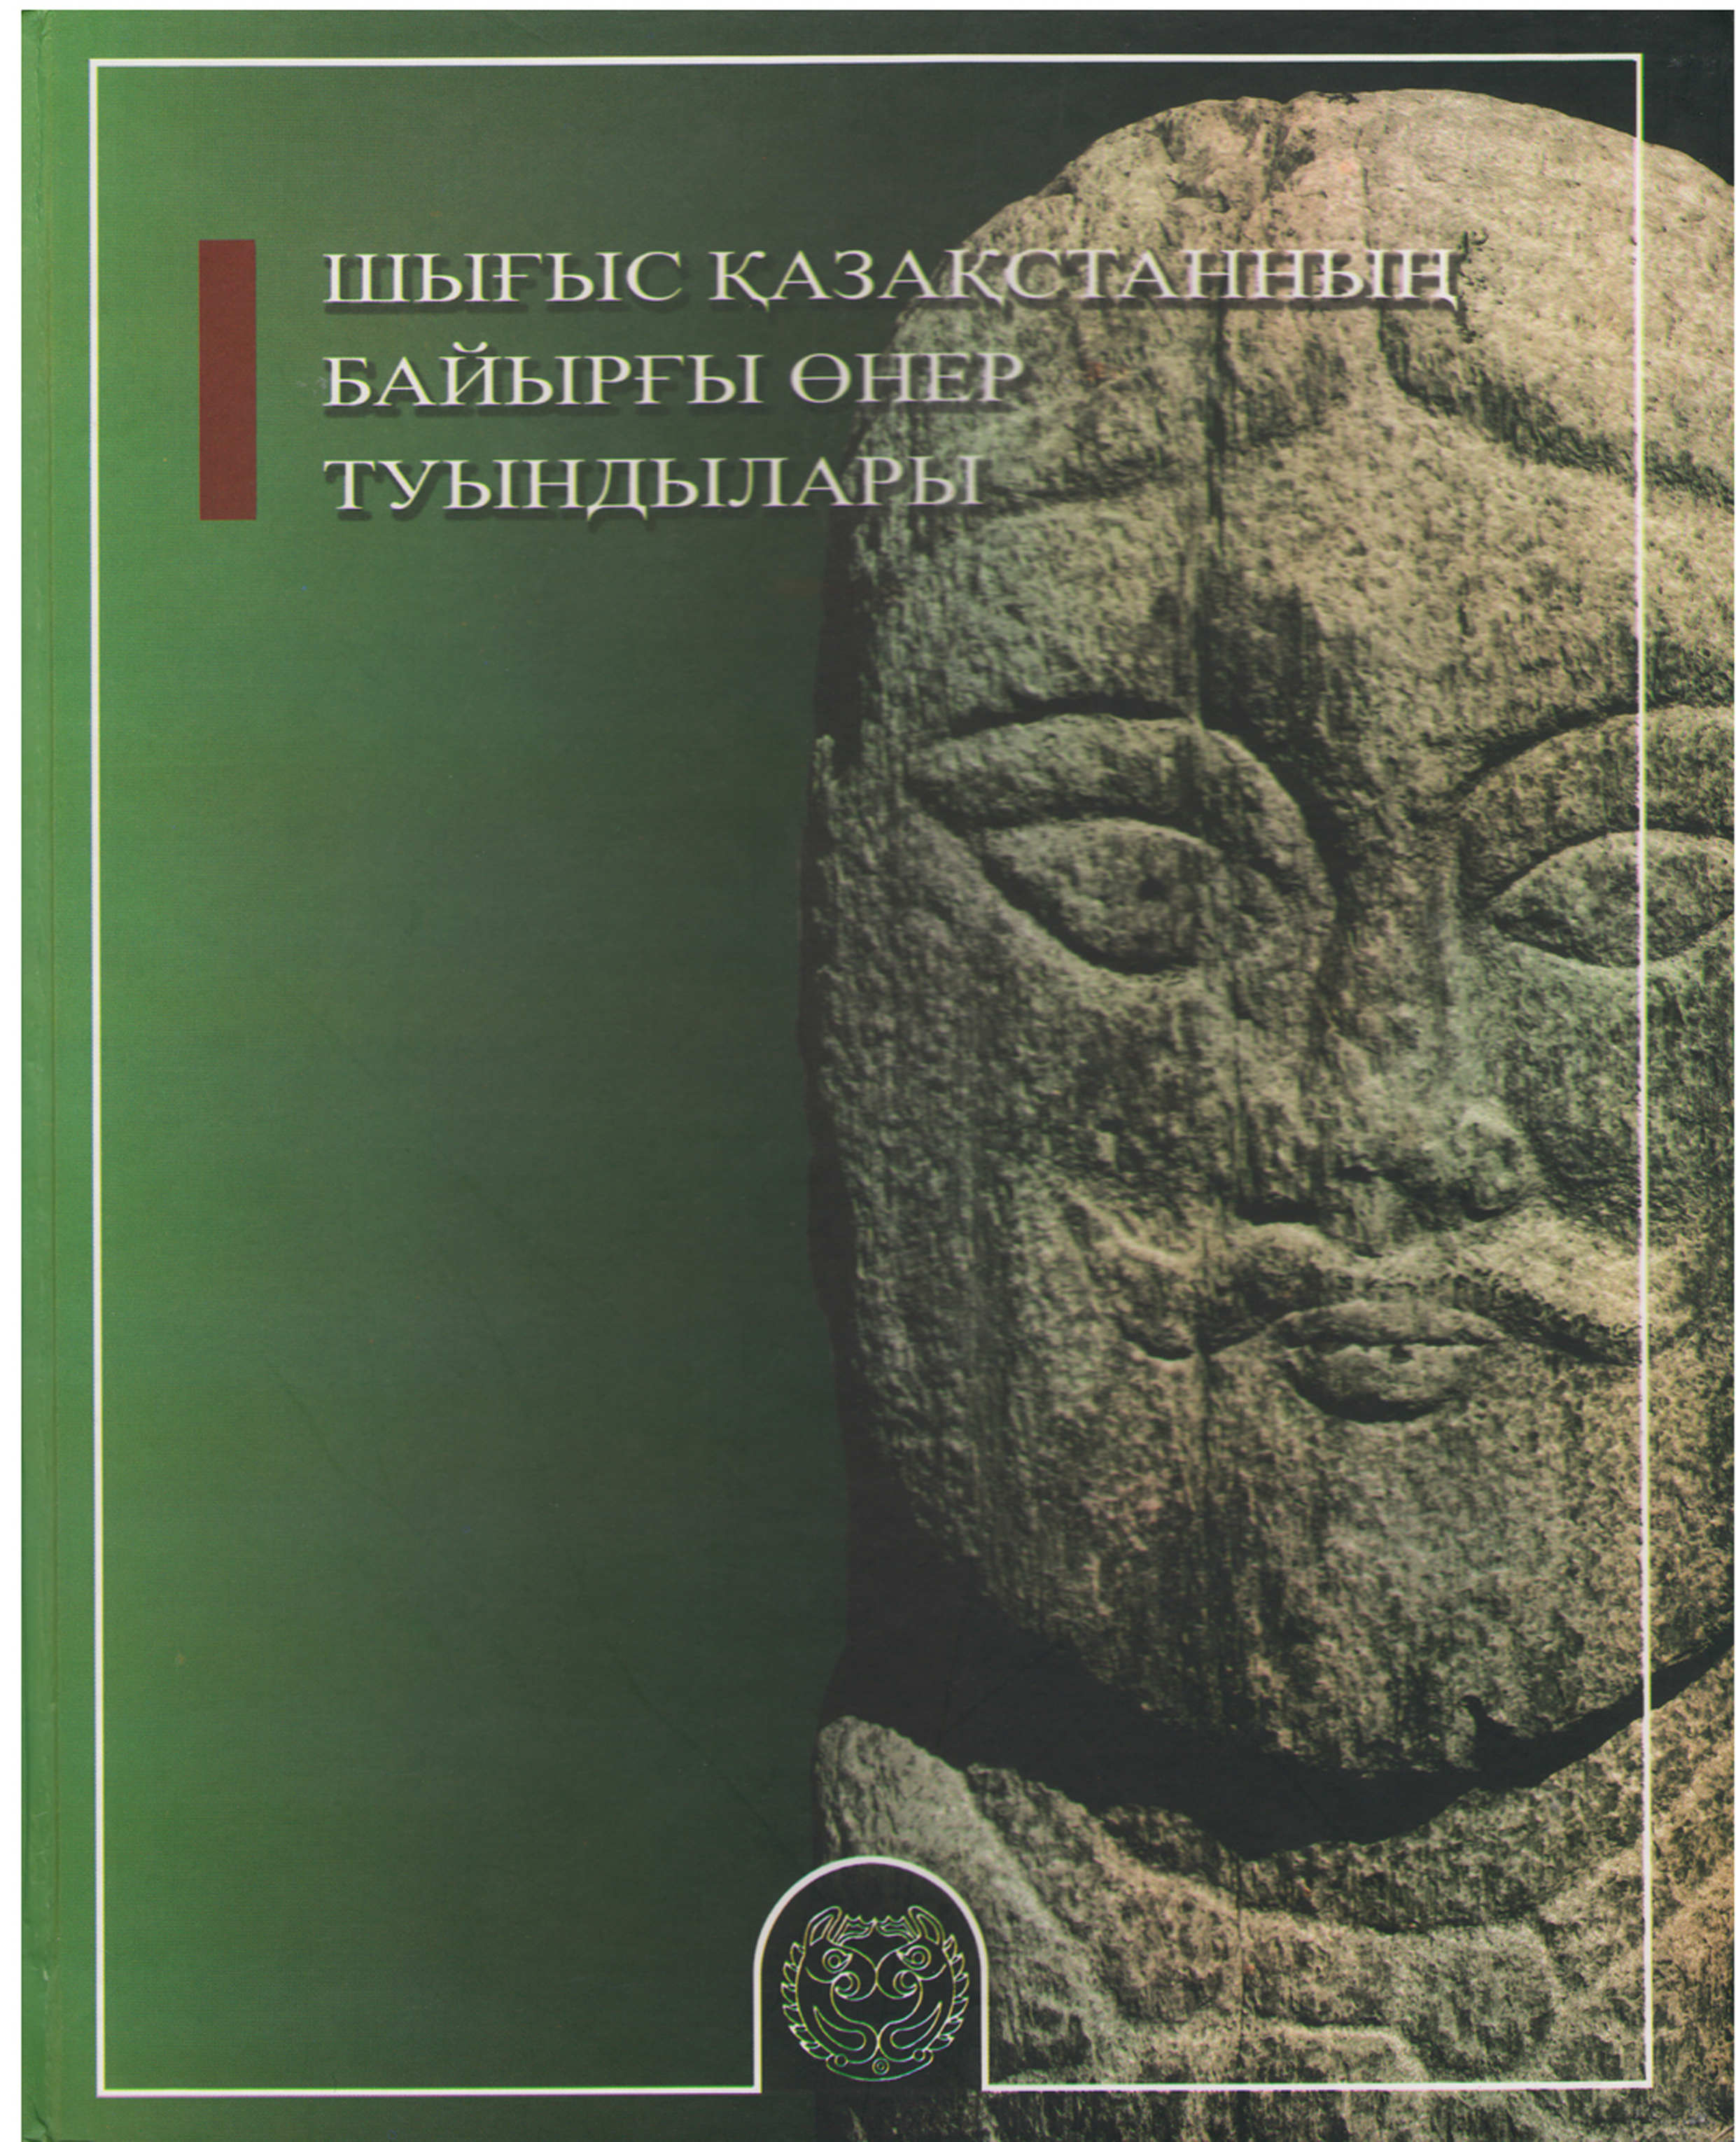 Обложка Памятники монументального искусство Восточного Казахстана